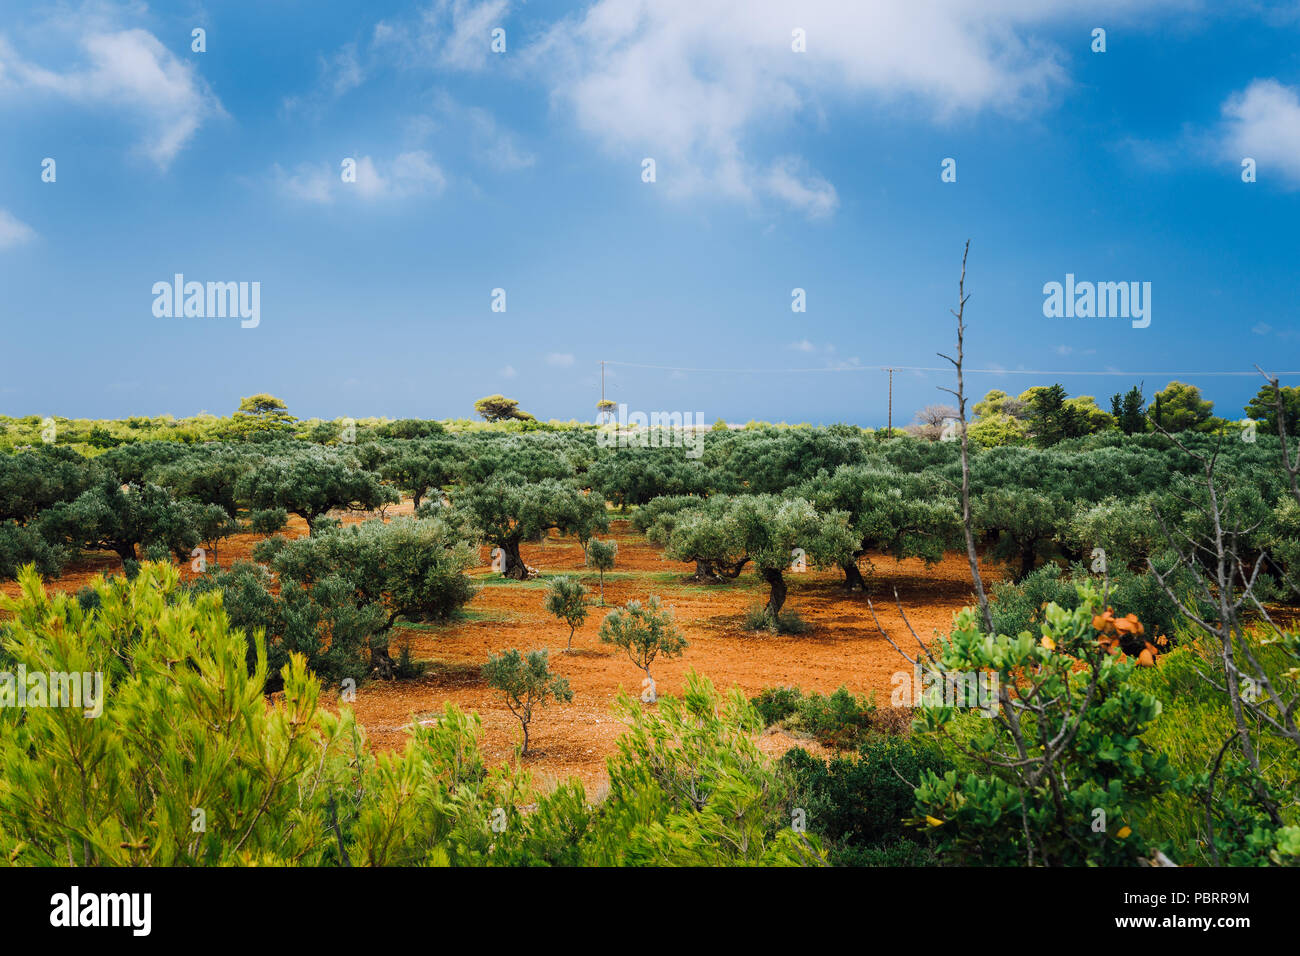 Griechenland Inseln Landschaft mit Landwirtschaft Felder von Oliven auf roten Lehmböden Stockfoto